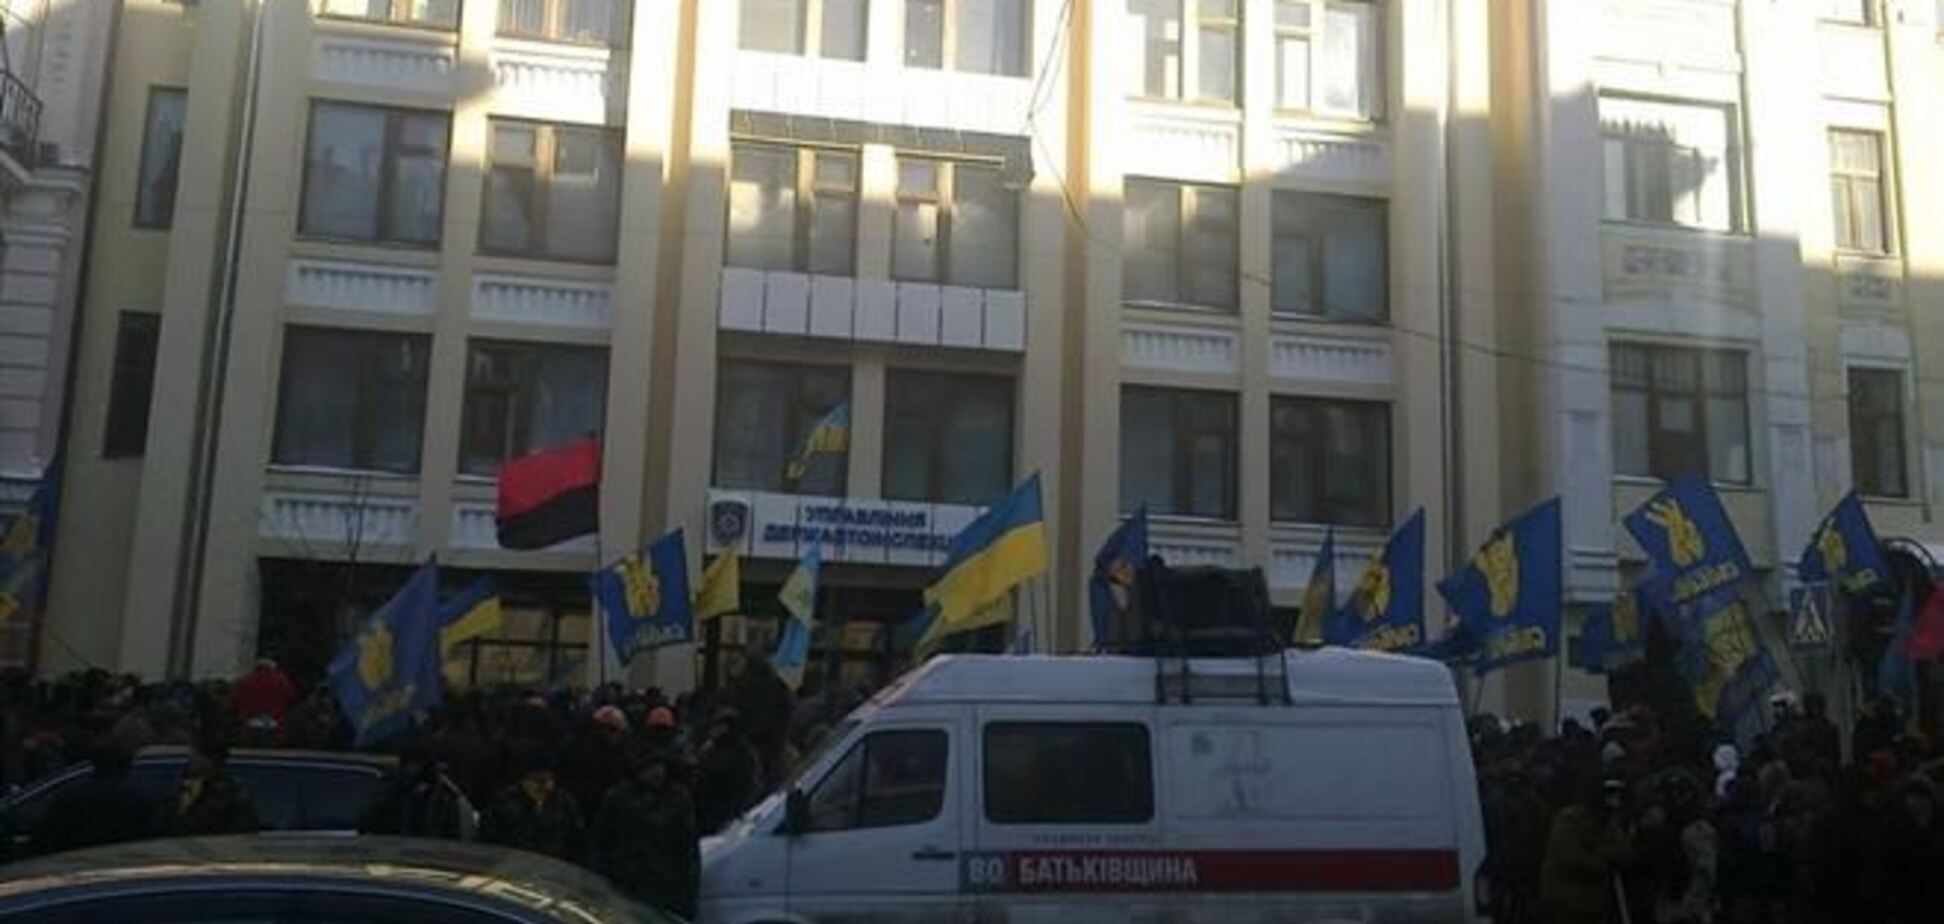 Евромайдановцы пикетировали здание киевской ГАИ